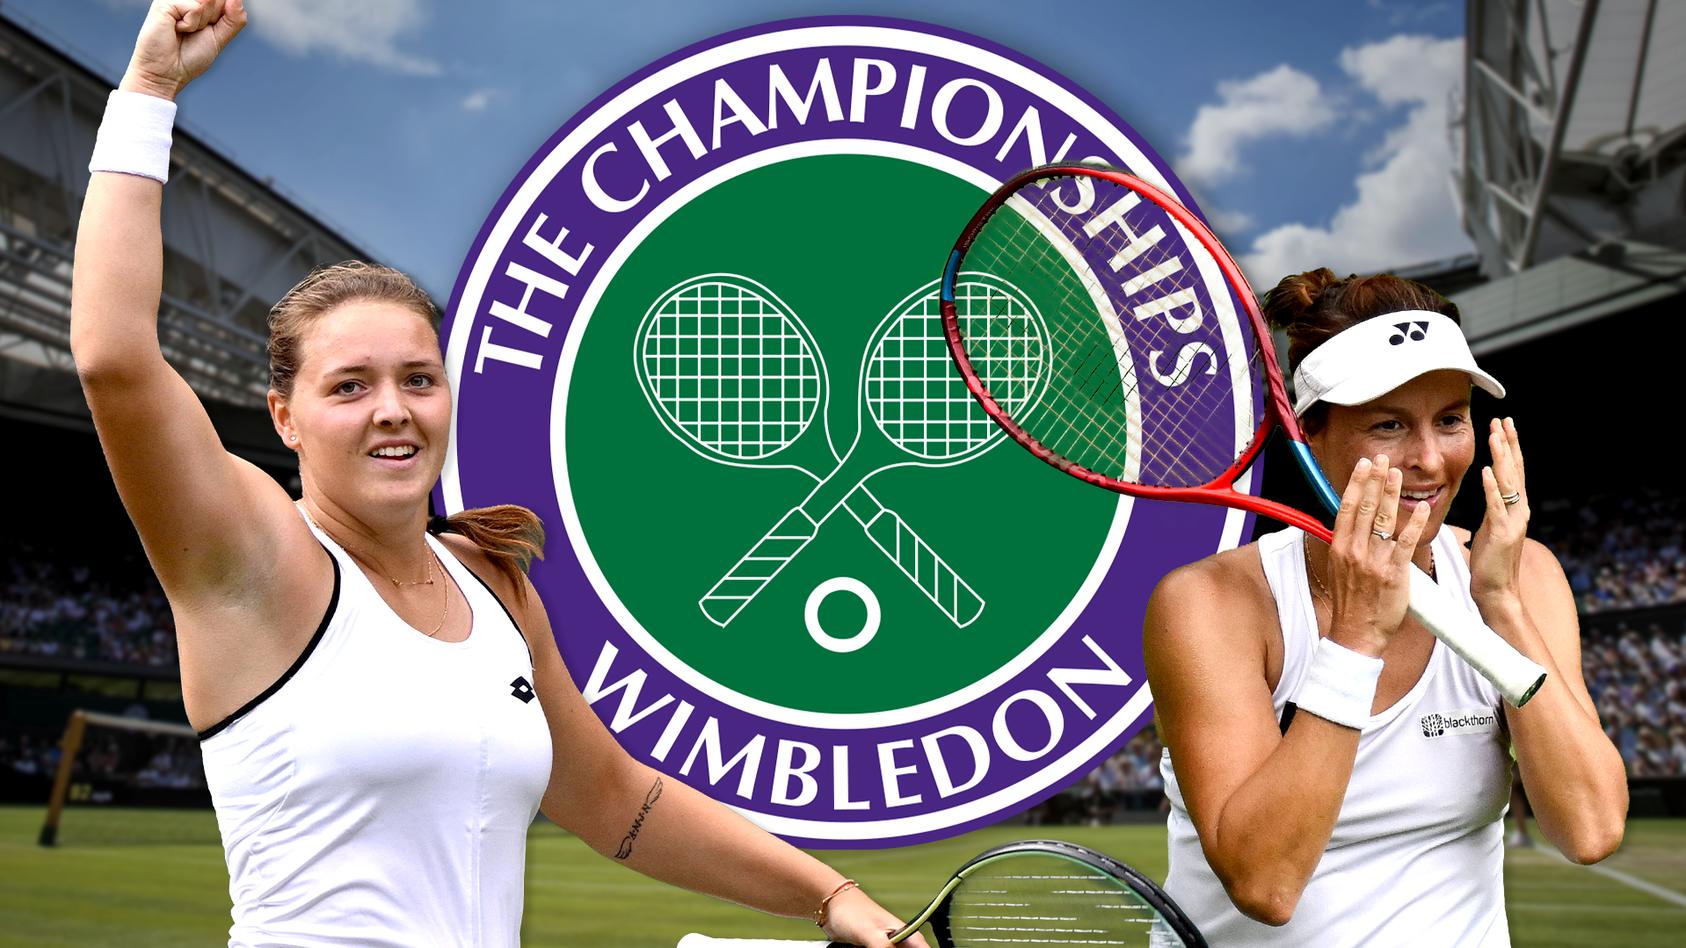 Deutsches Duell in Wimbledon - So ticken unsere Tennis-Hoffnungen